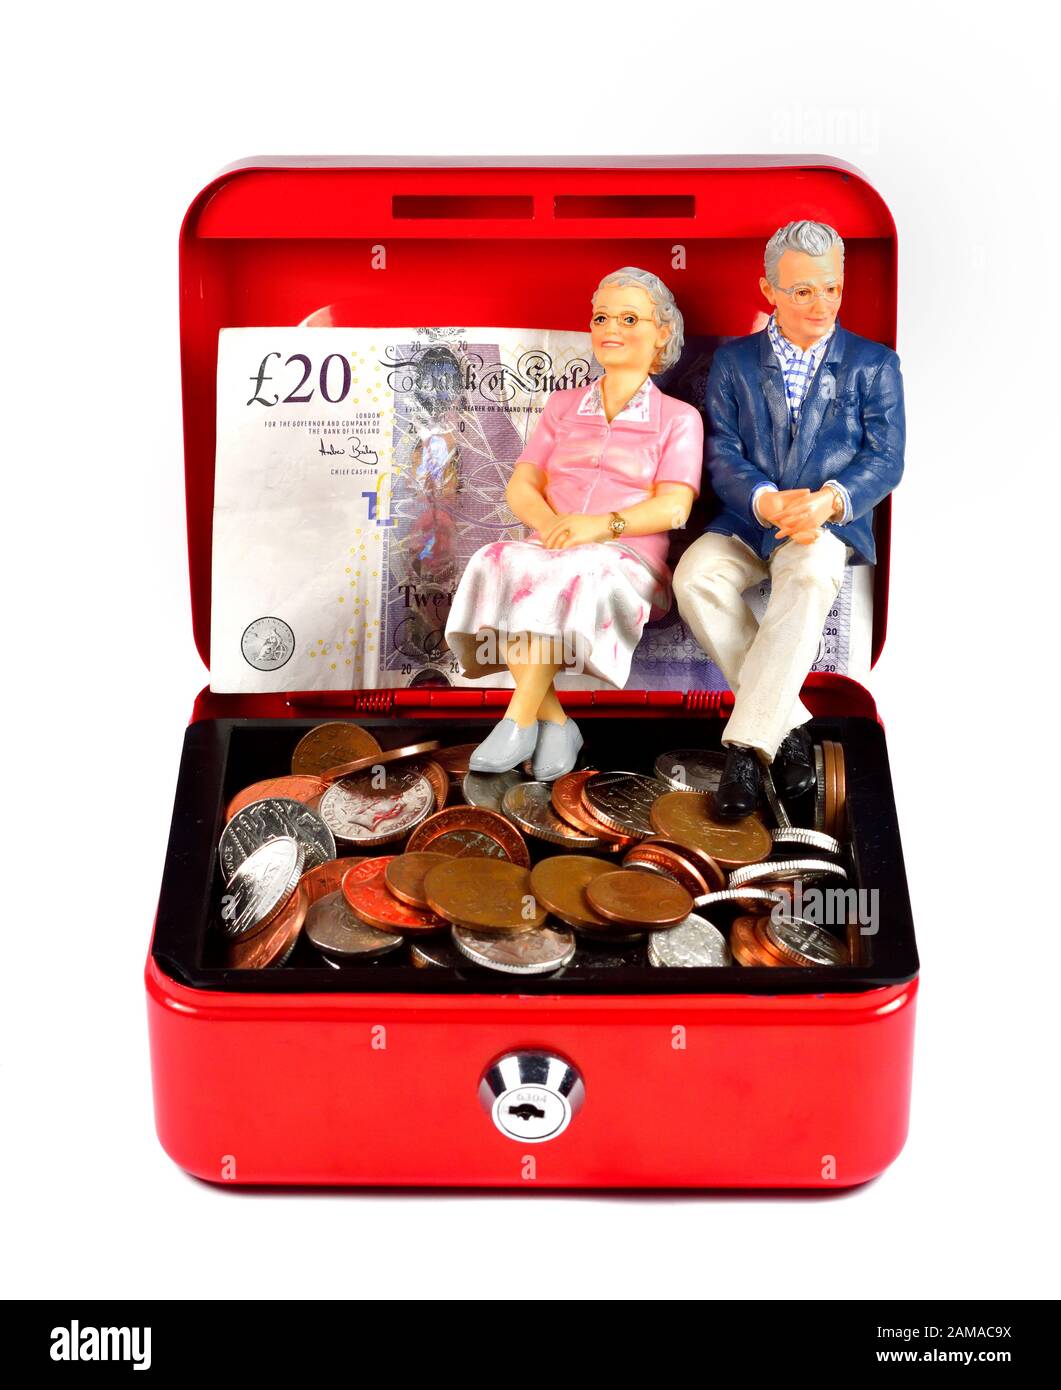 Le retraité se présente dans une caisse rouge, un concept d'épargne-retraite Banque D'Images